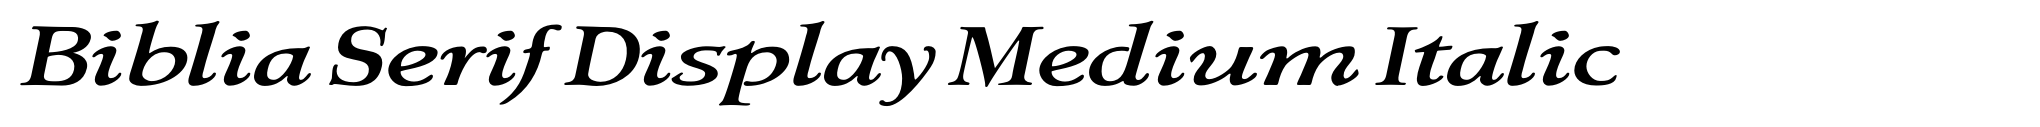 Biblia Serif Display Medium Italic image